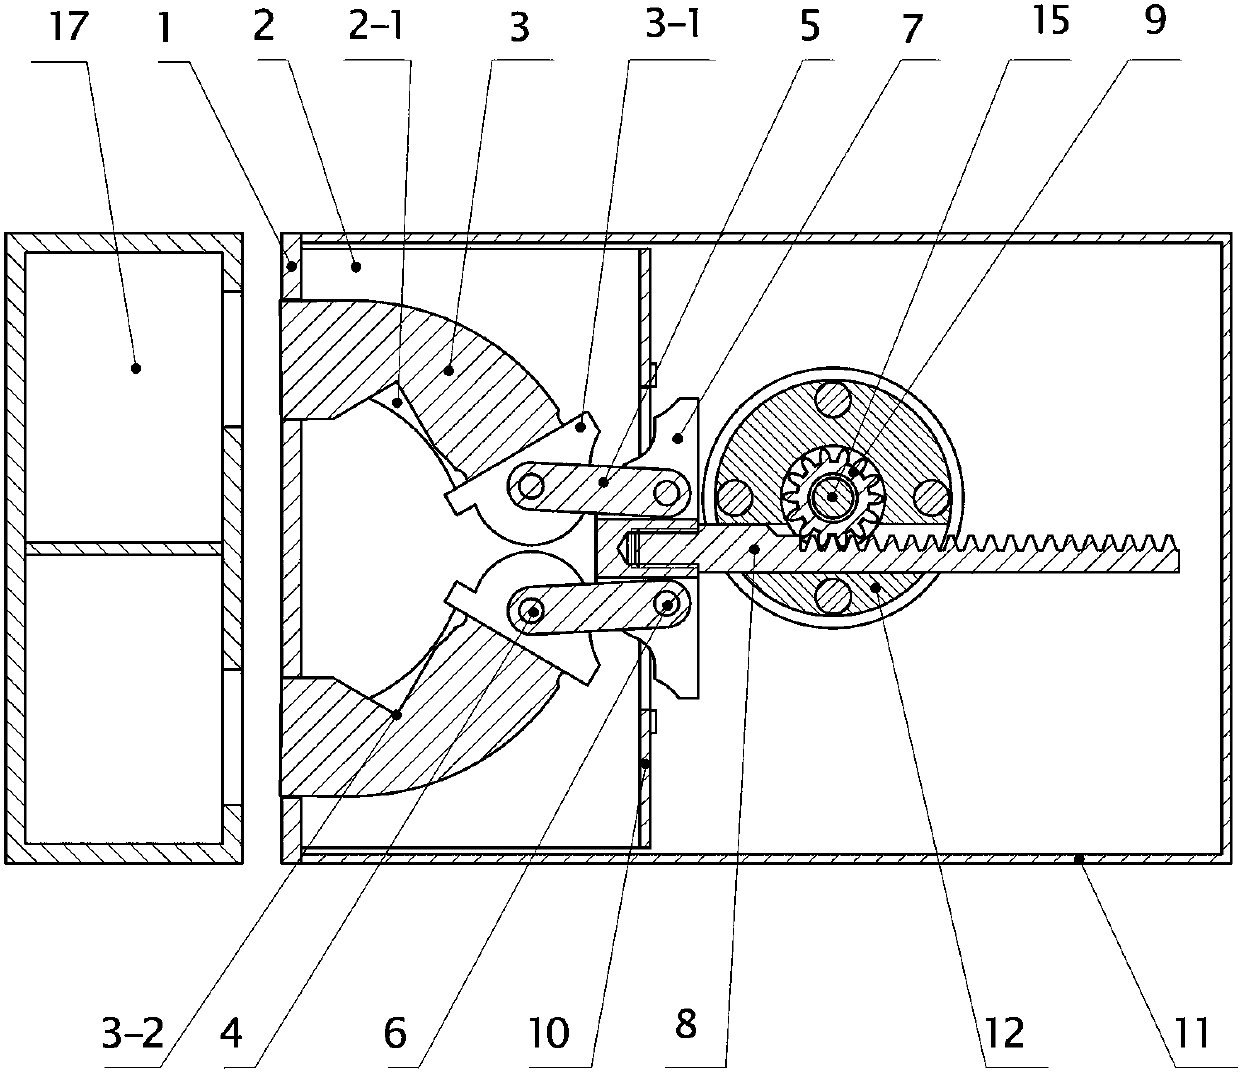 Internal clamping type lock